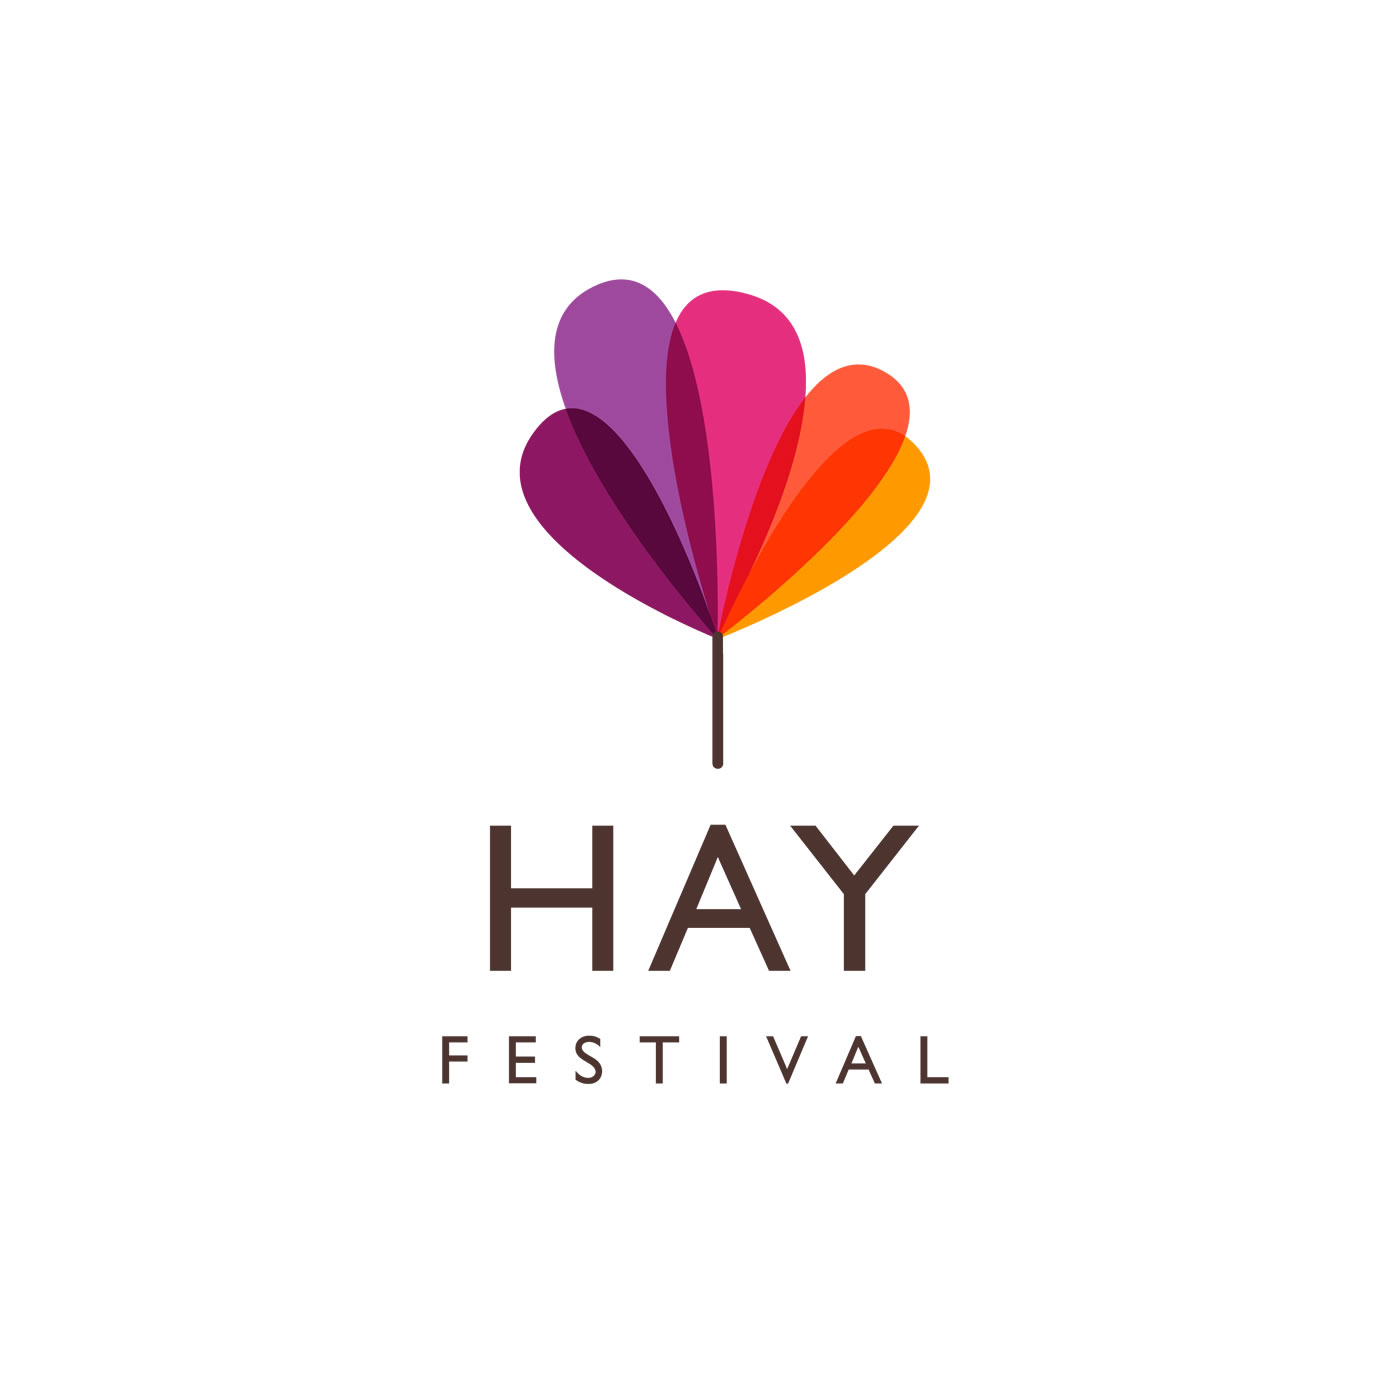 David Spiegelhalter - Hay Festival - Hay Player Audio & Video